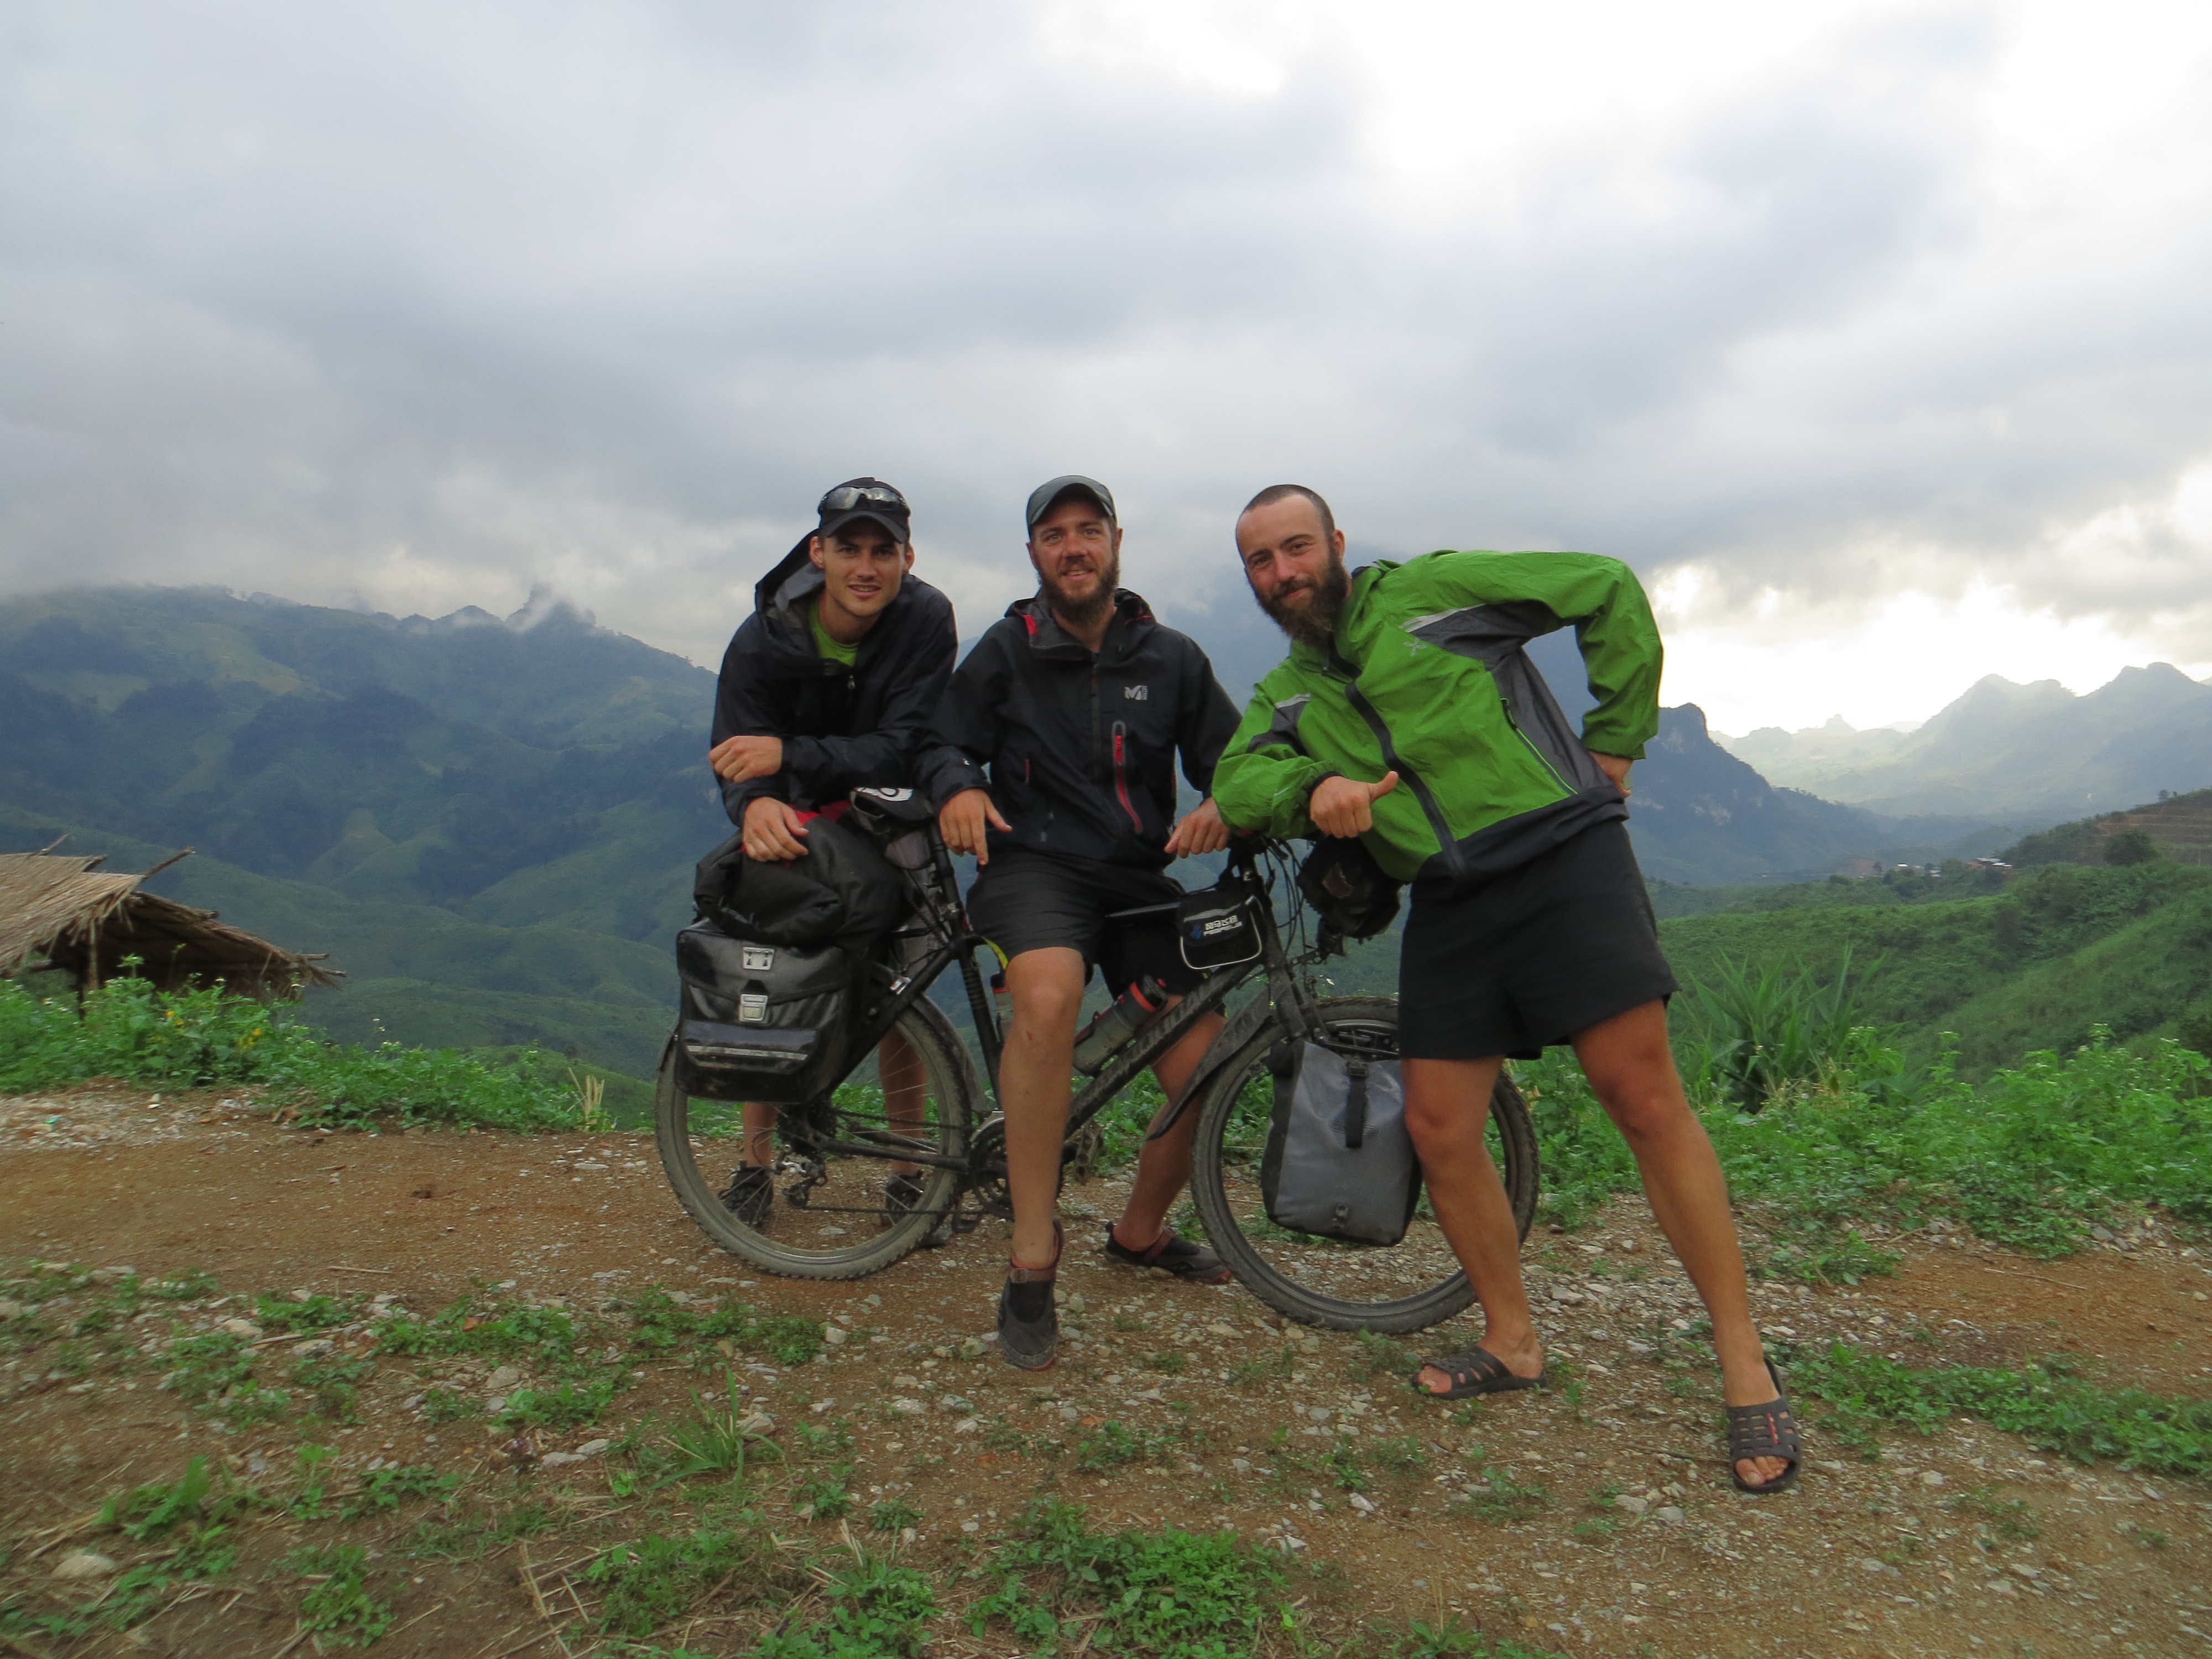 Andy, cycliste australien nous accompagne avec sa bonne humeur durant notre traversée du Laos.